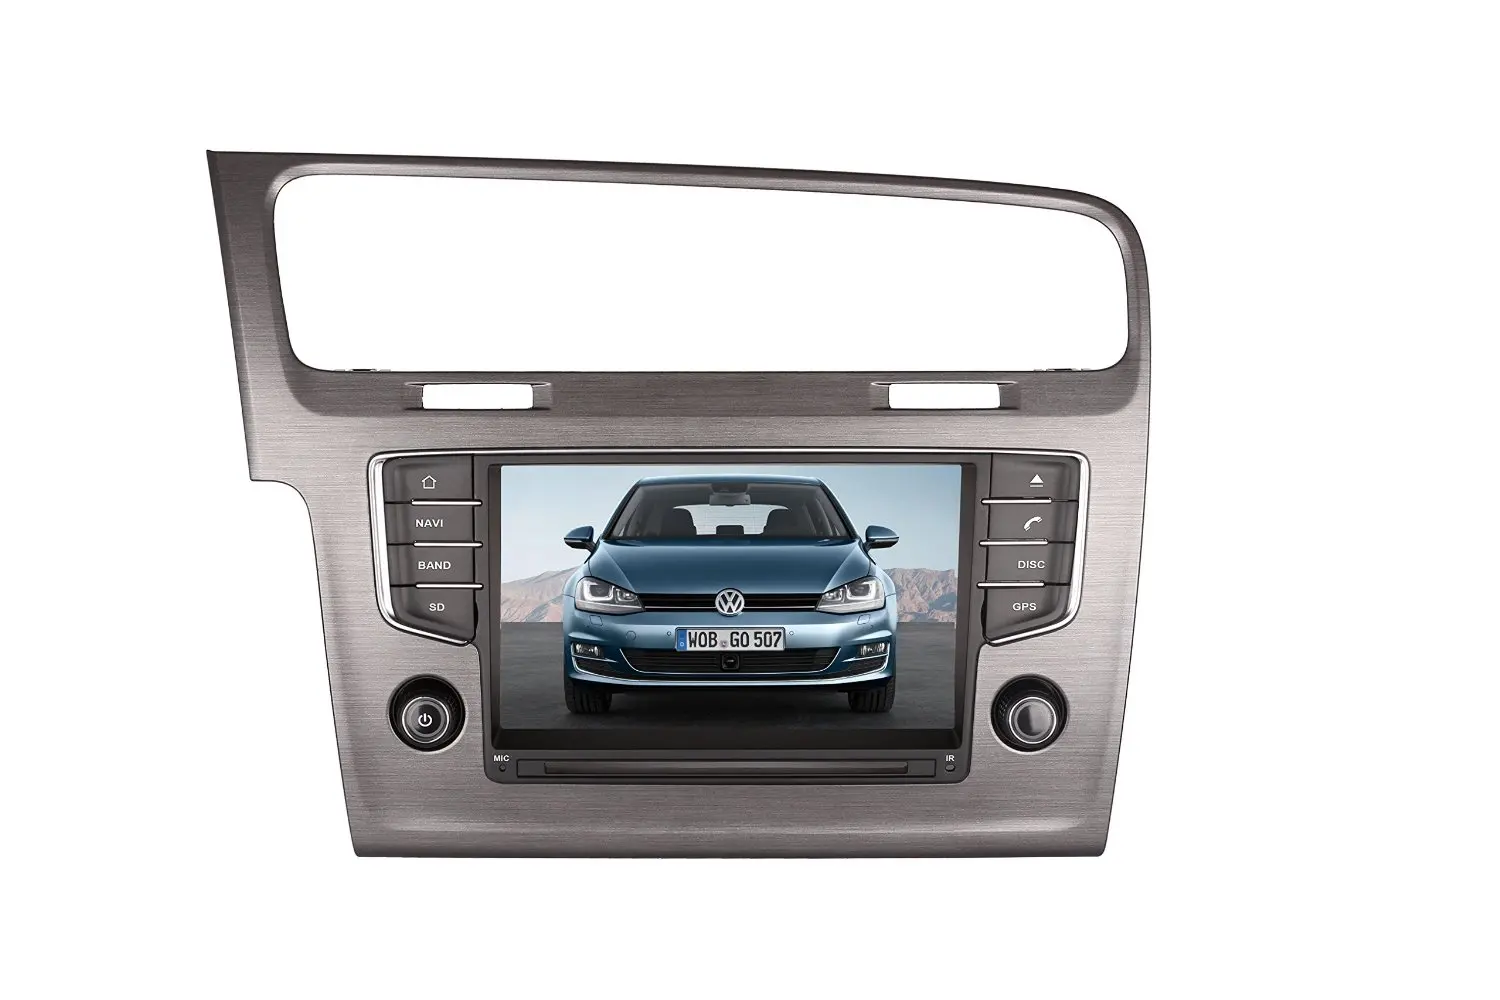 Buy TamYu 9 Inch Touchscreen Monitor Car GPS Navigation